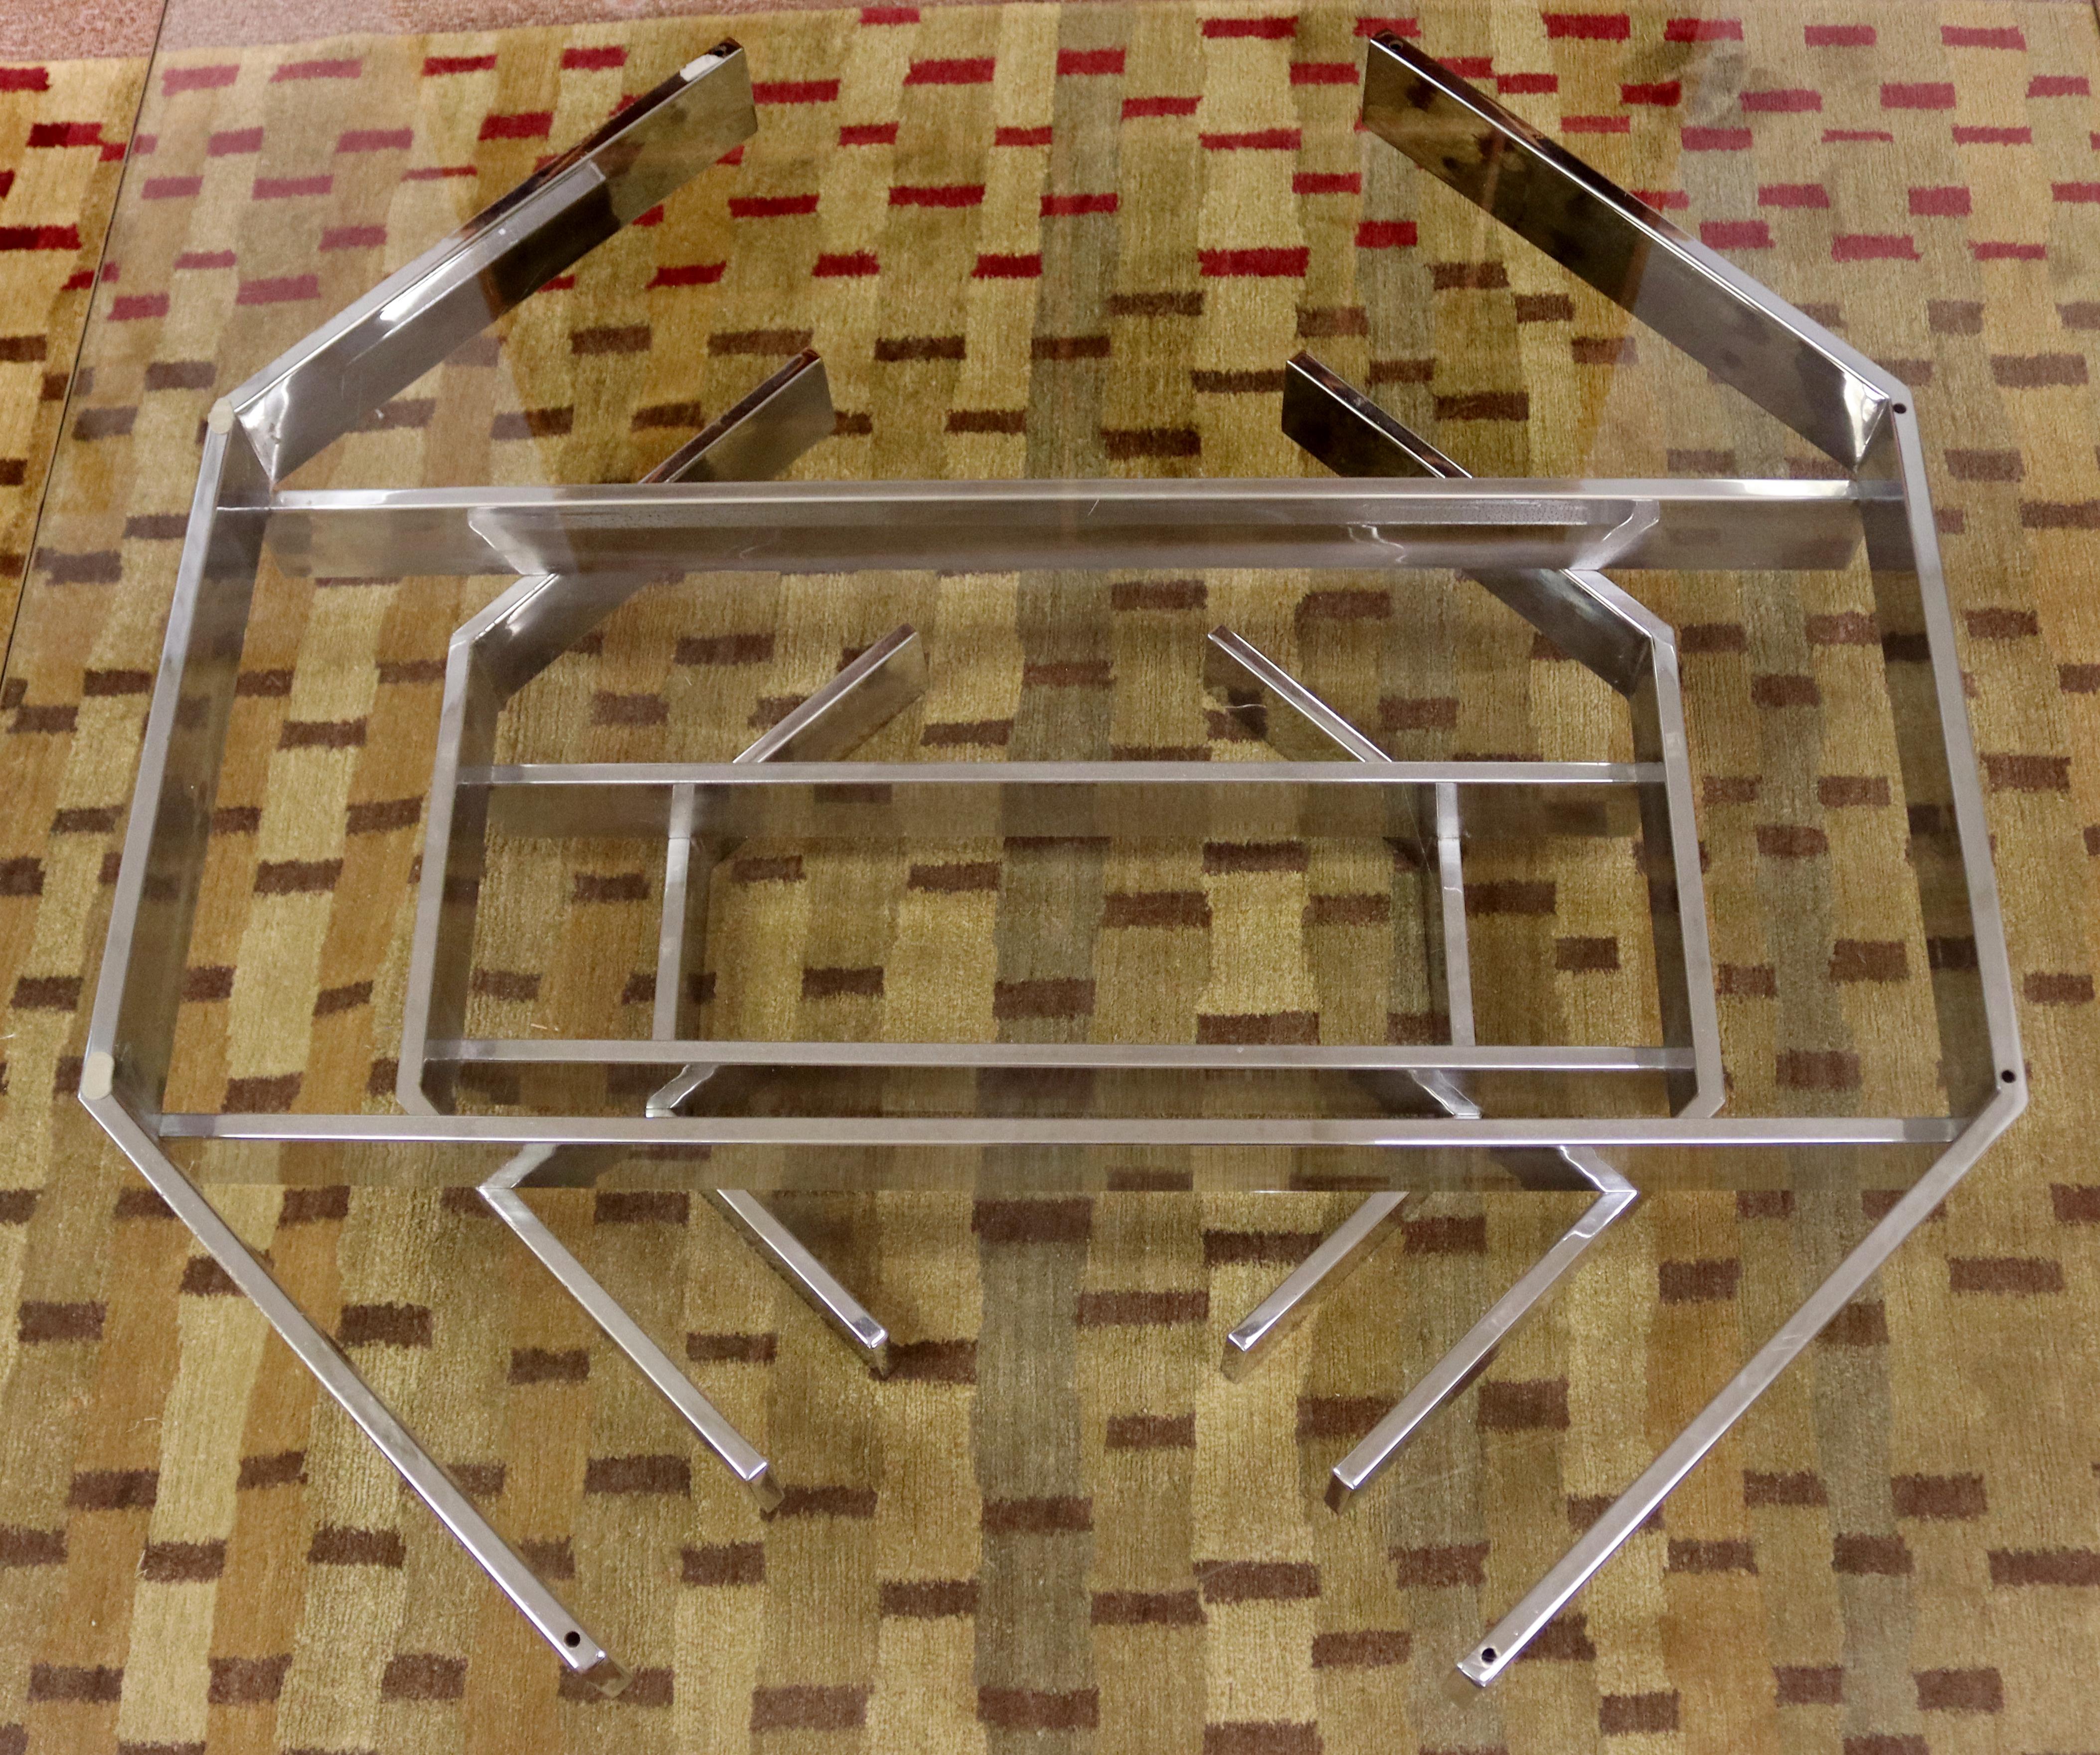 Nous vous proposons une magnifique table basse, avec un plateau en verre sur une base chromée de forme géométrique, par Paul Mayen, vers les années 1960. En excellent état vintage, avec quelques rayures superficielles sur le verre. Les dimensions